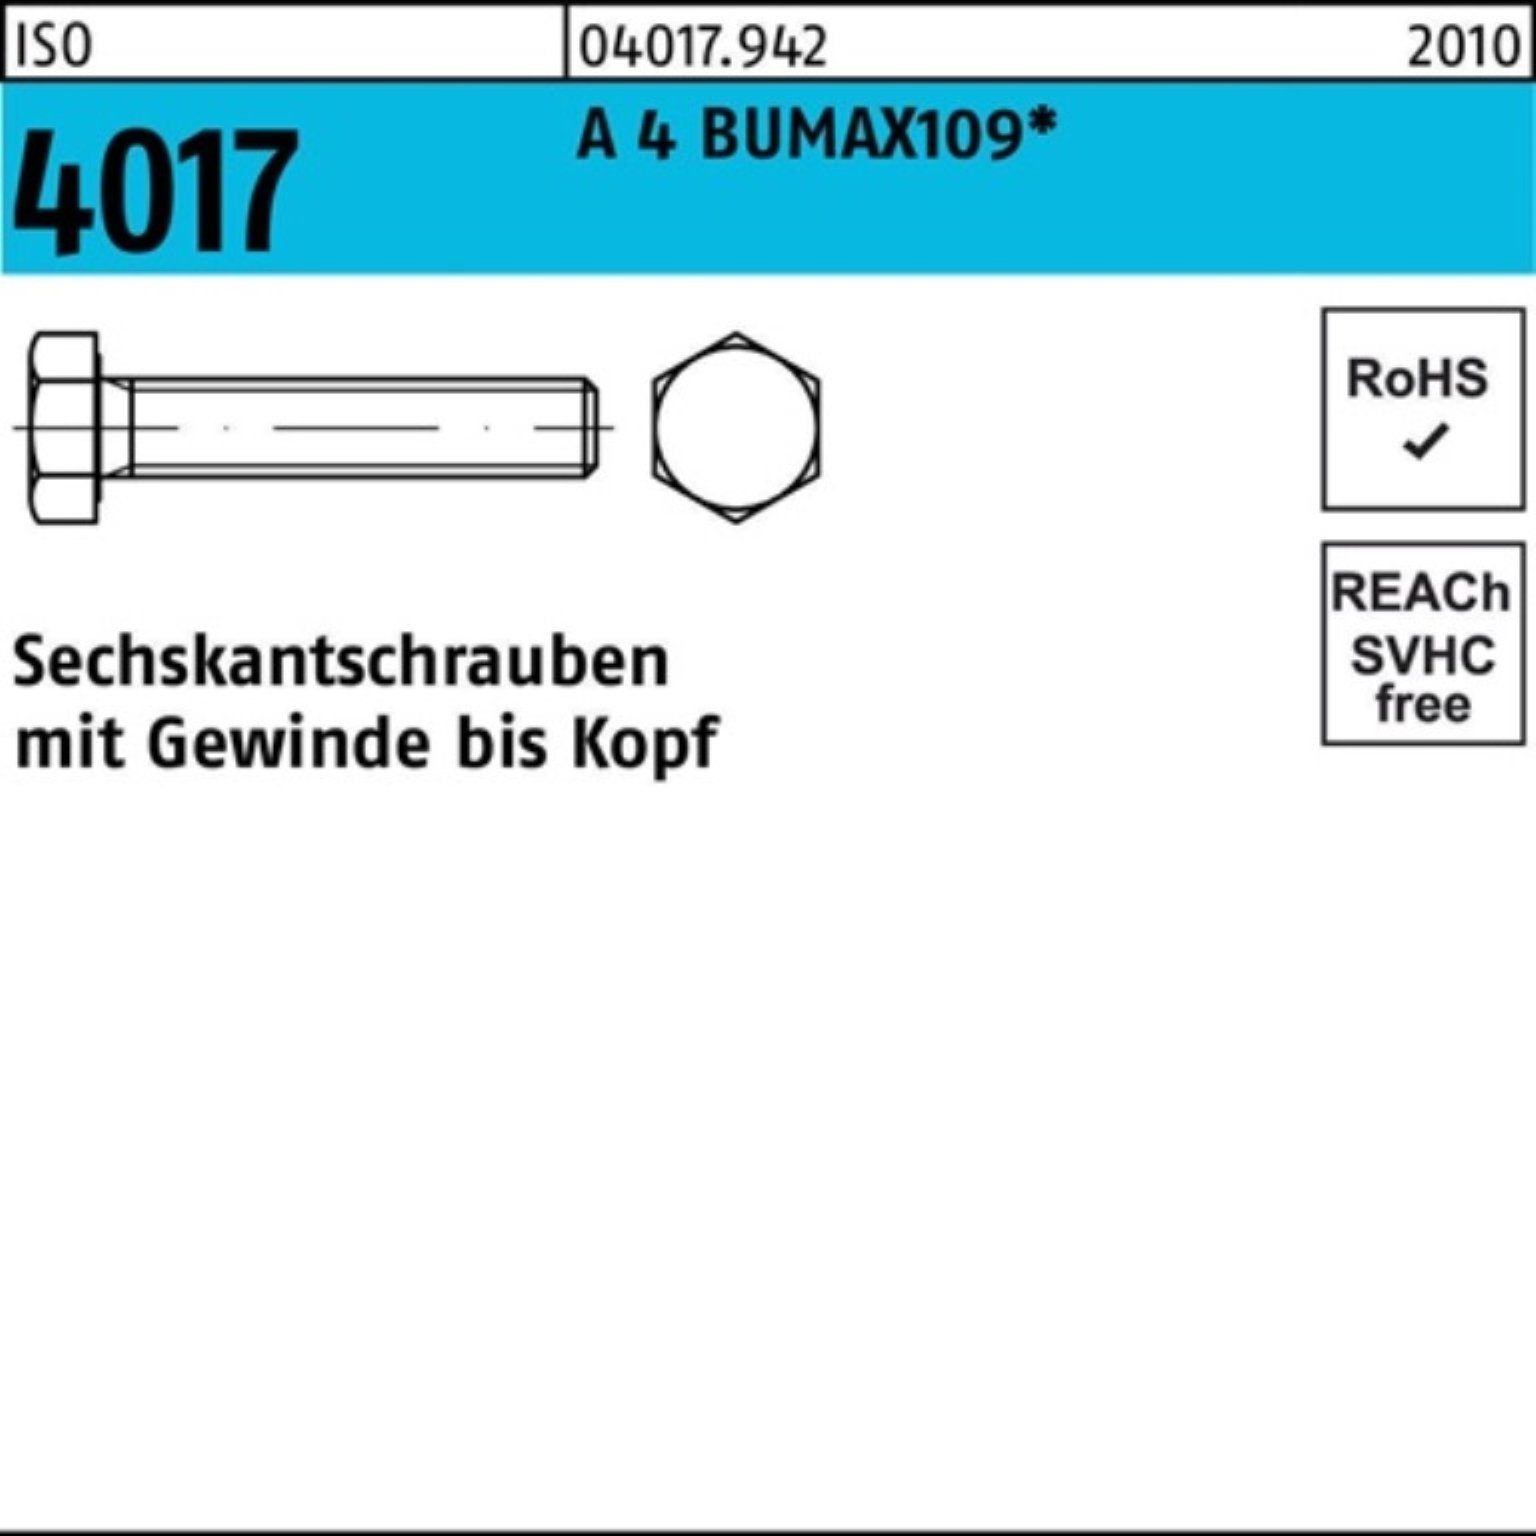 Bufab Sechskantschraube 100er Pack Sechskantschraube ISO 4017 VG M16x 60 A 4 BUMAX109 25 Stüc